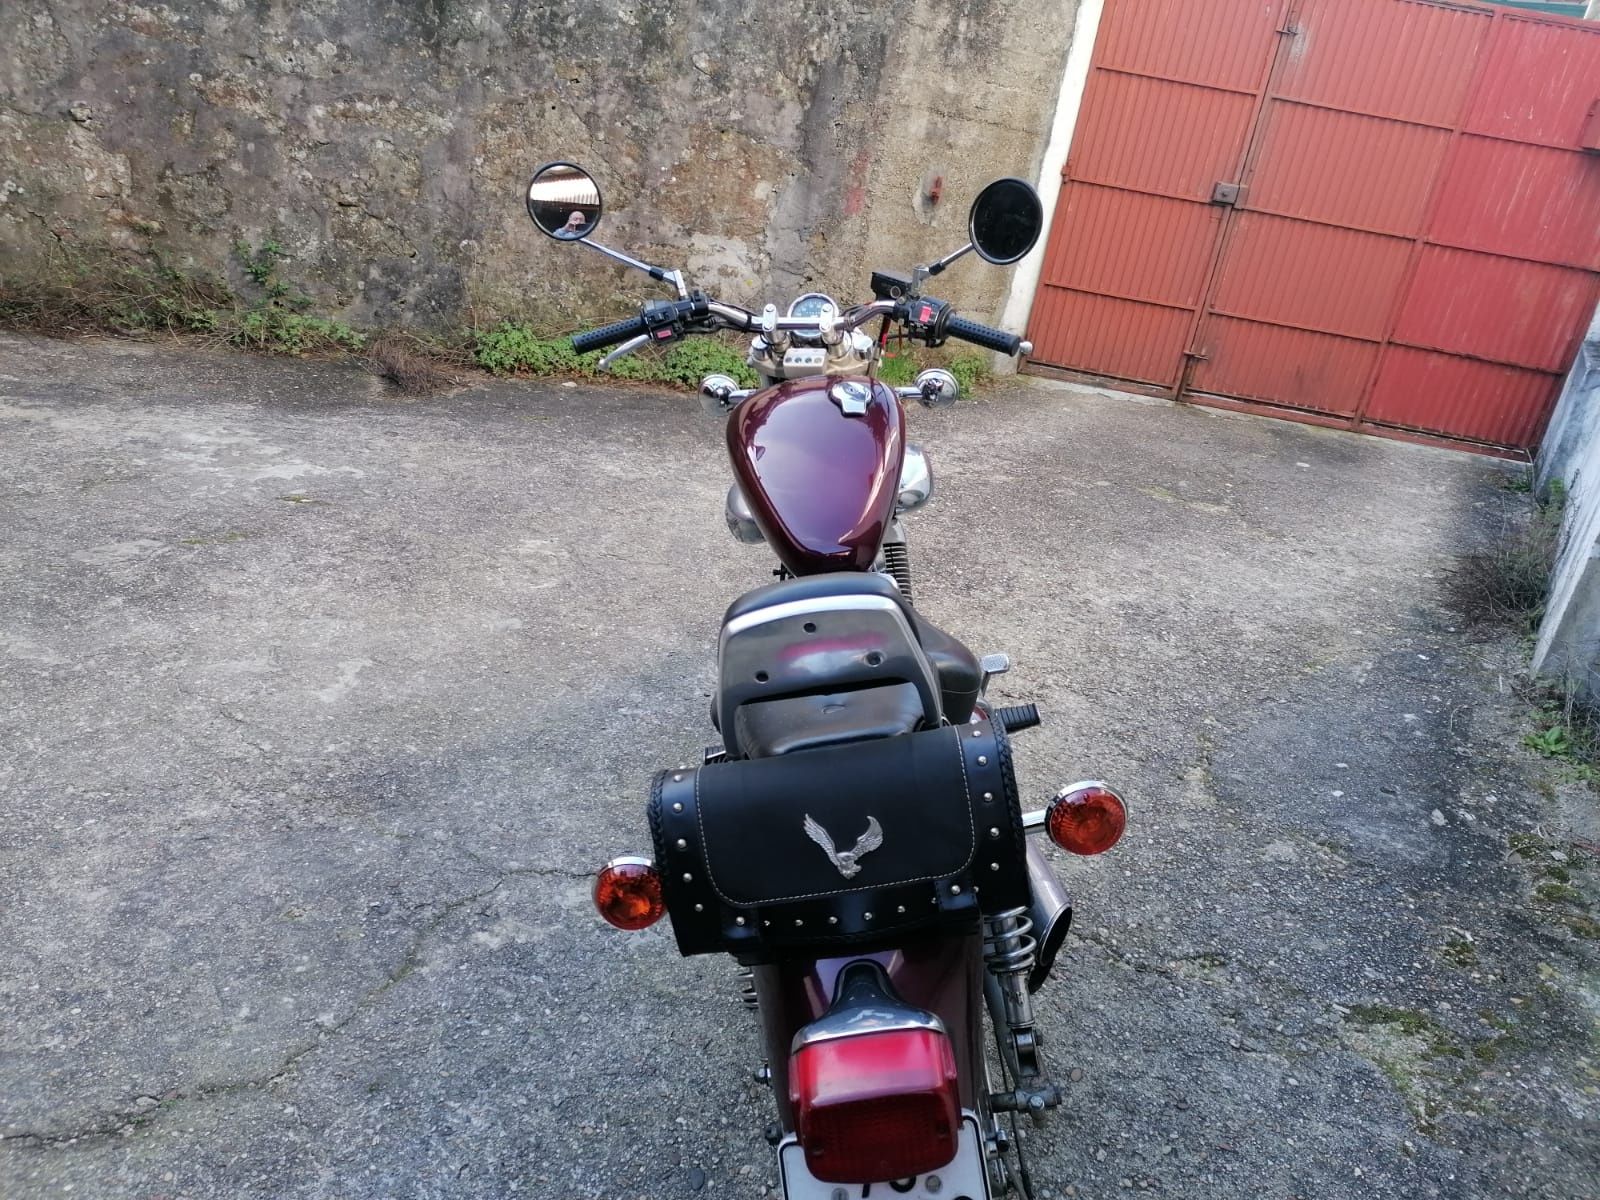 Yamaha Virago XV 535